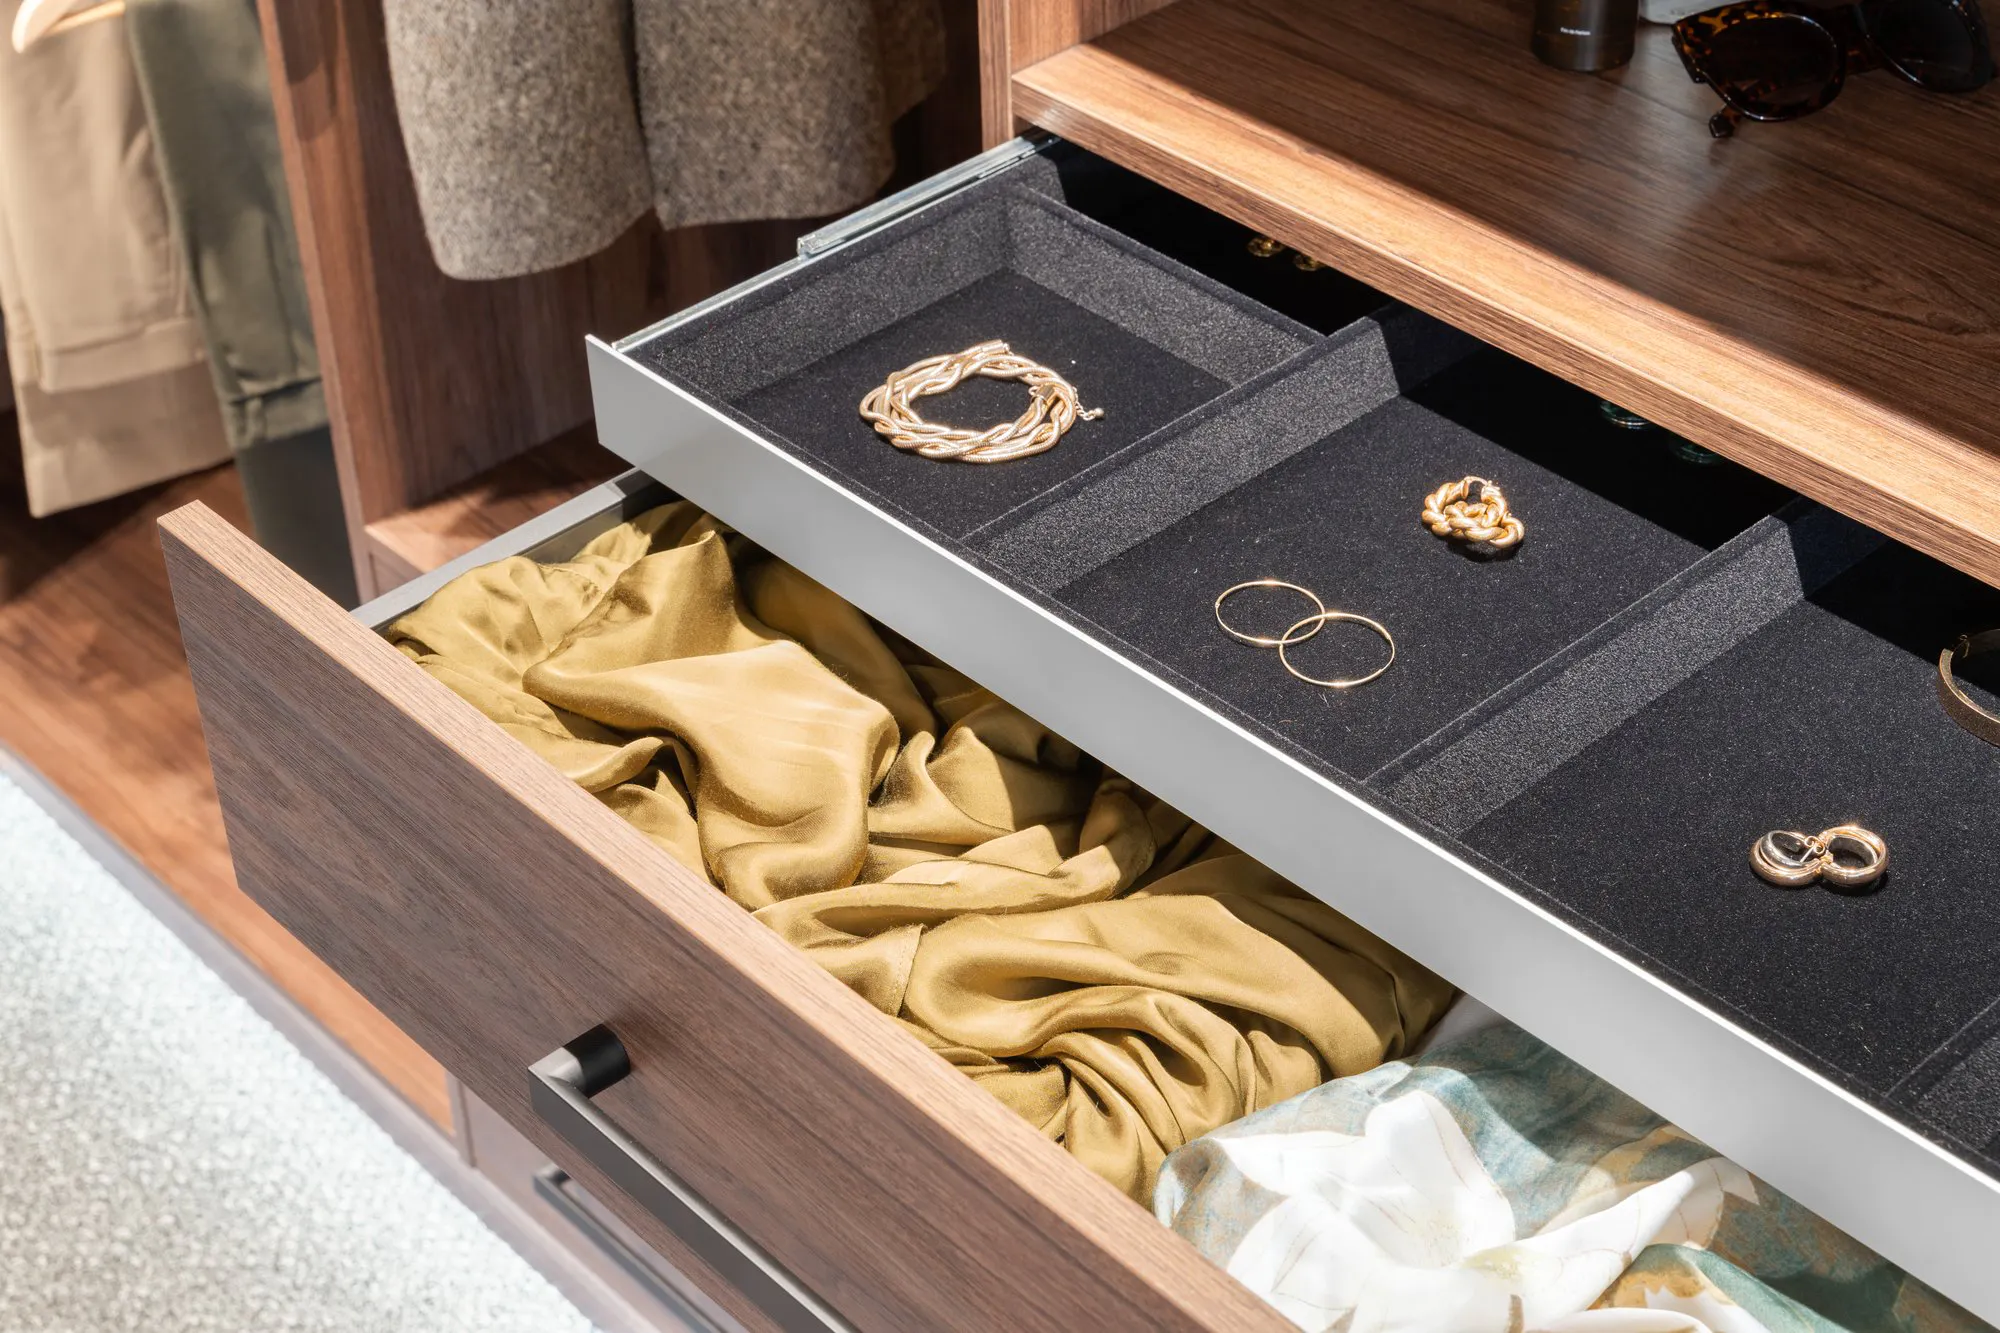 Jewellery drawer in a wardrobe is open showing earrings and bracelents